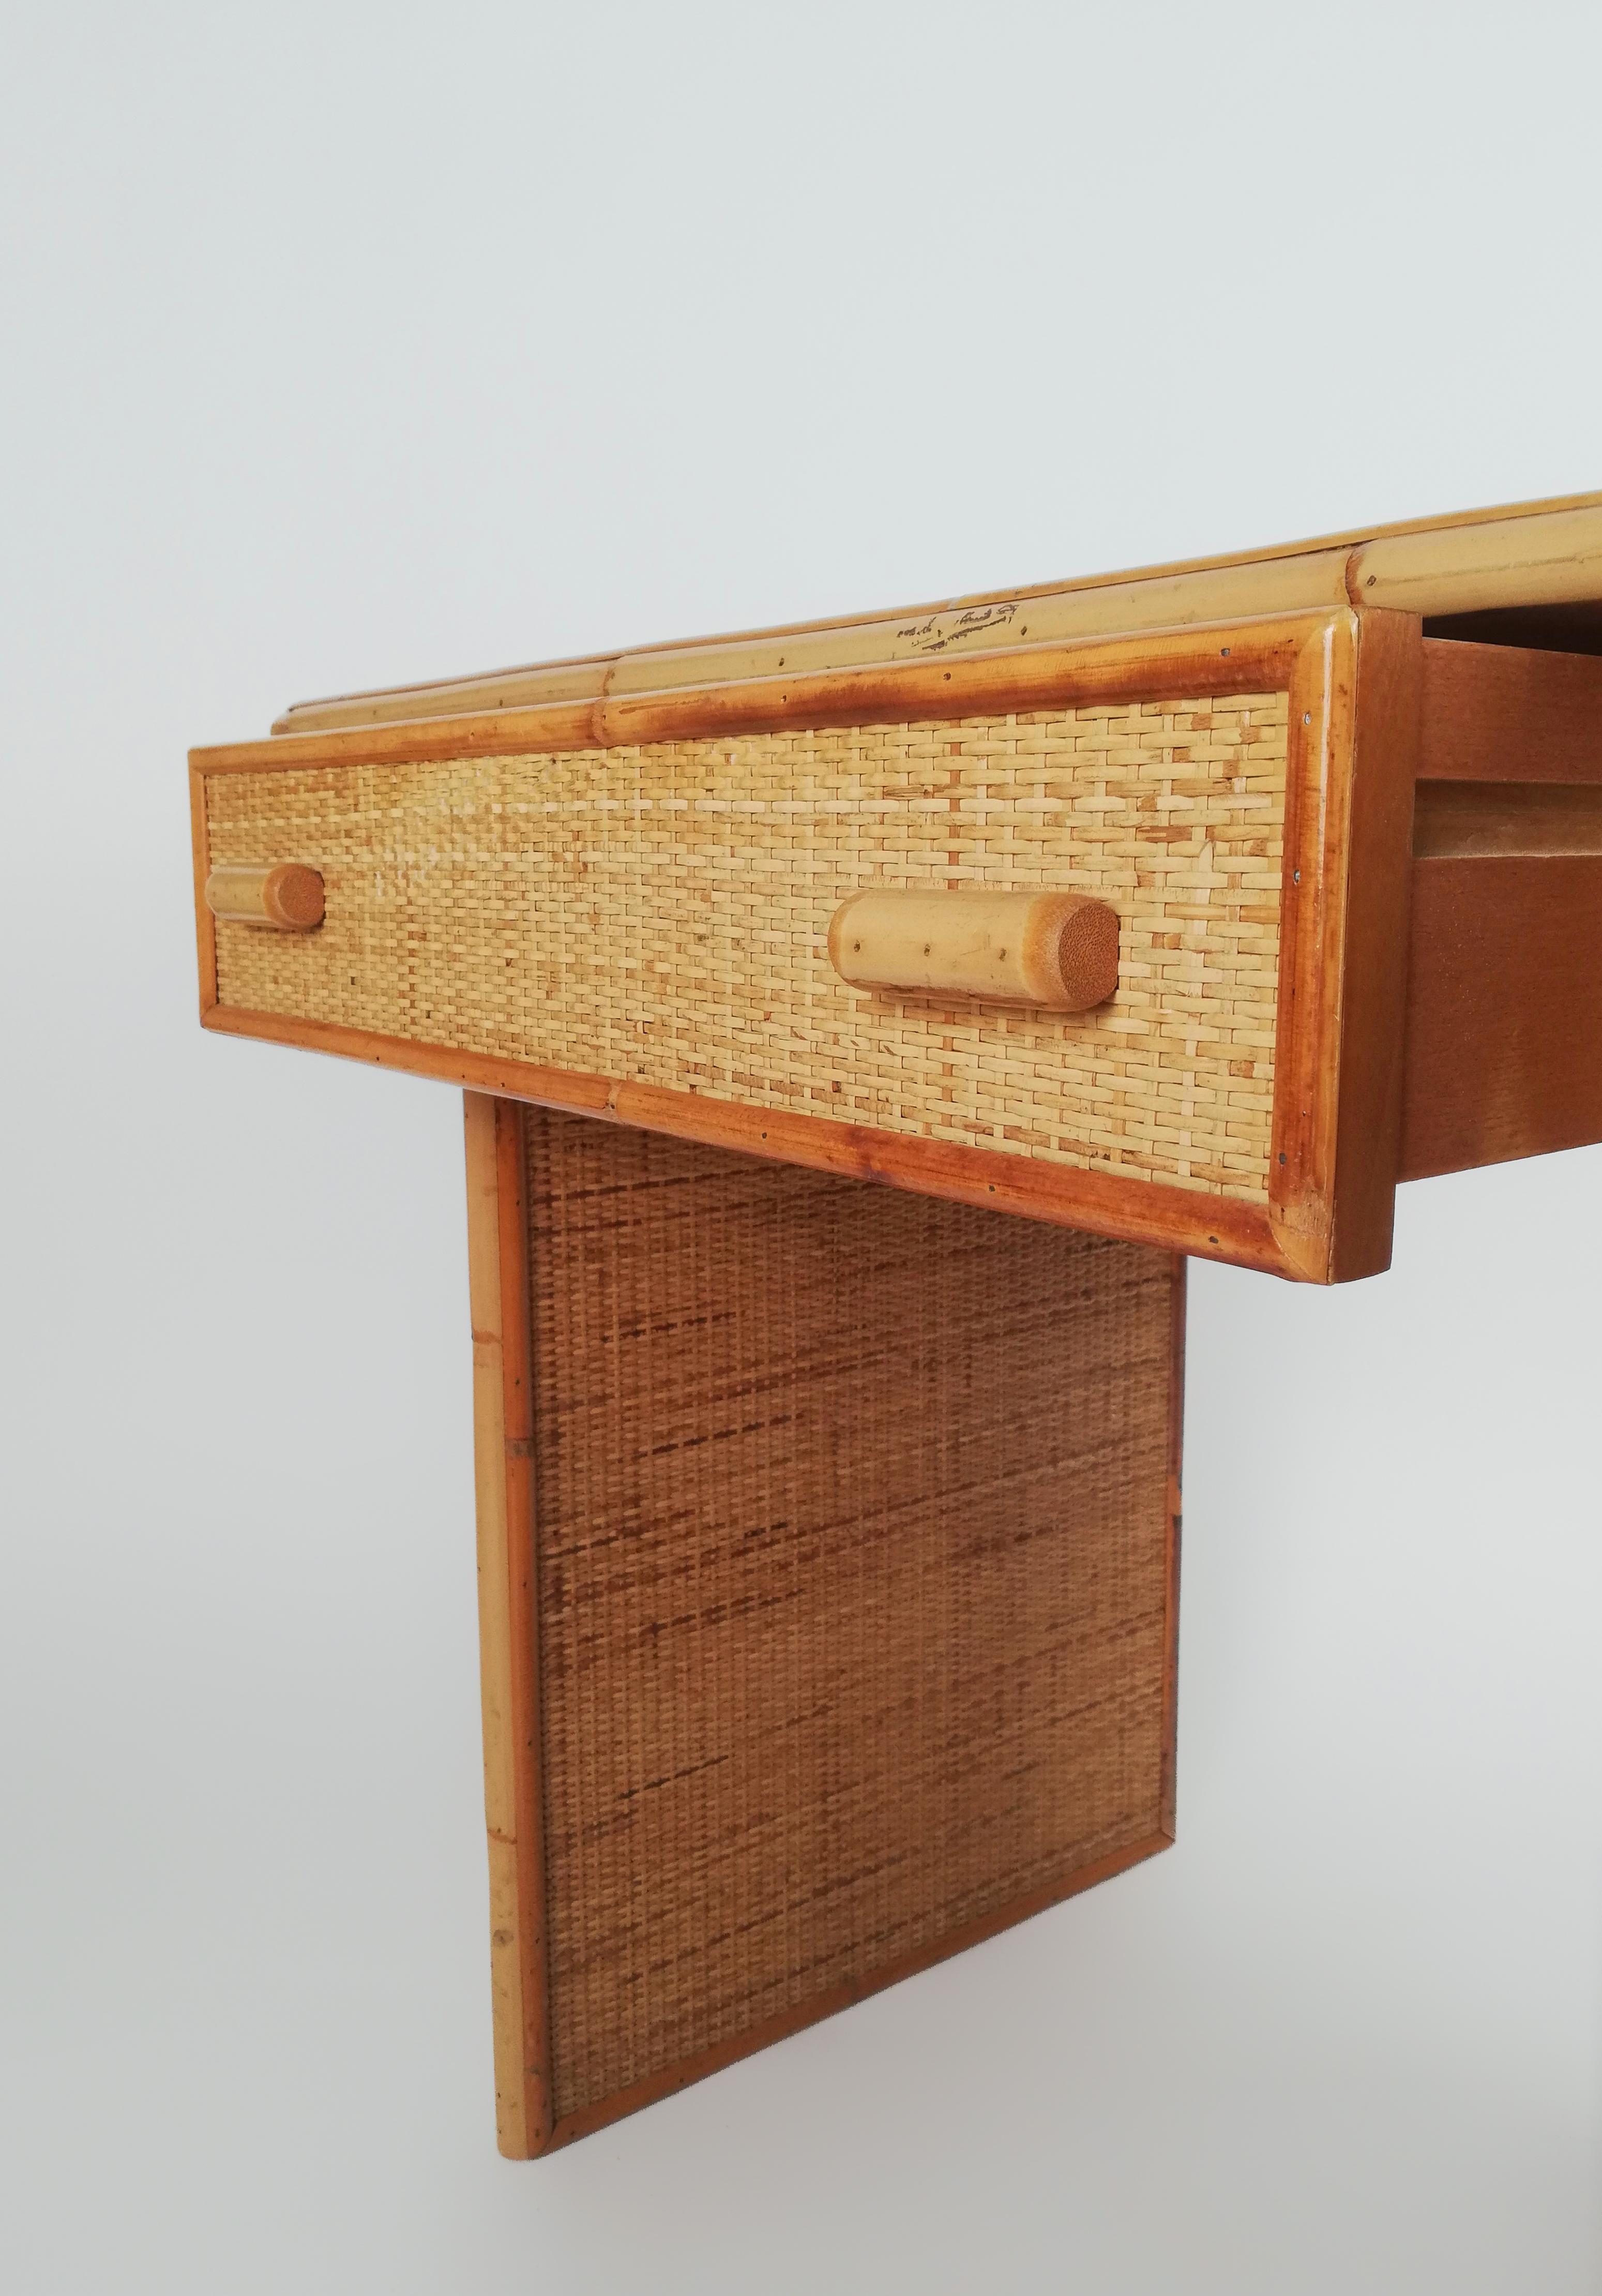 Ein Vintage-Schreibtisch mit Schubladen, der zwischen den 1960er und 1970er Jahren in Italien hergestellt wurde.
Dieser Schreibtisch hat eine solide Struktur aus Eschenholz und Sperrholz, die mit einer dicken Textur aus geflochtenem Rattan und